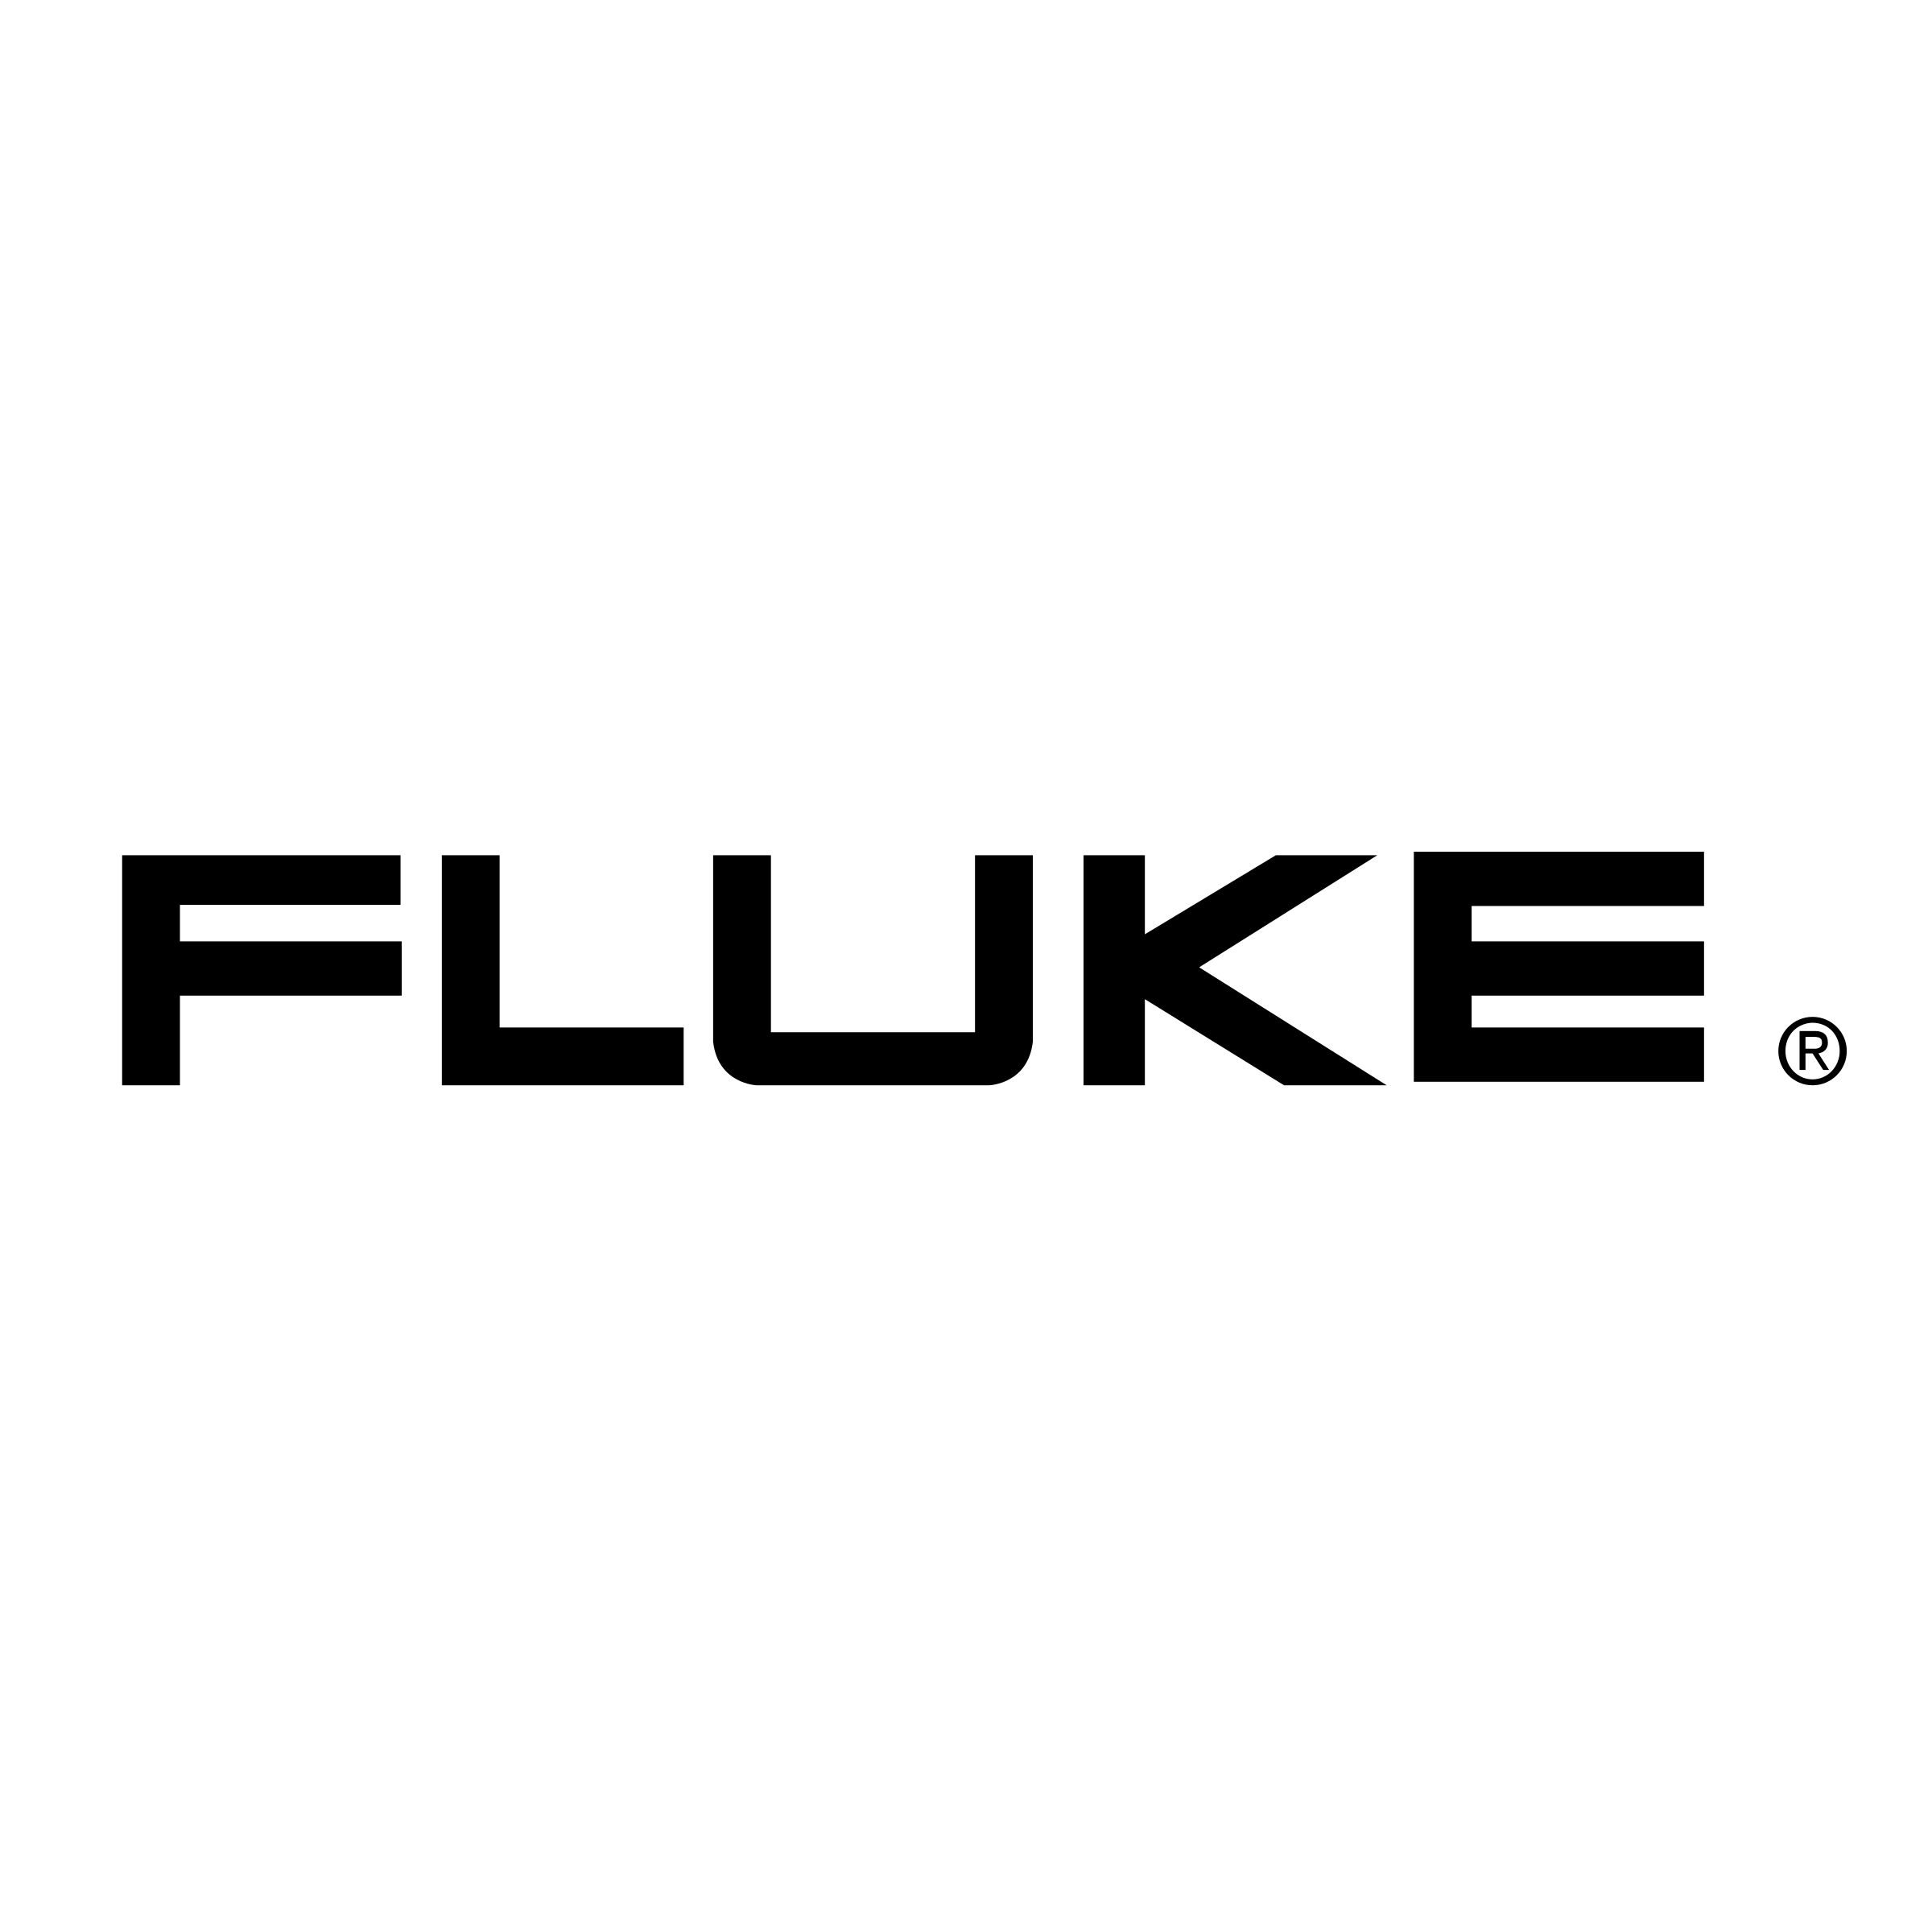 Fluke logo